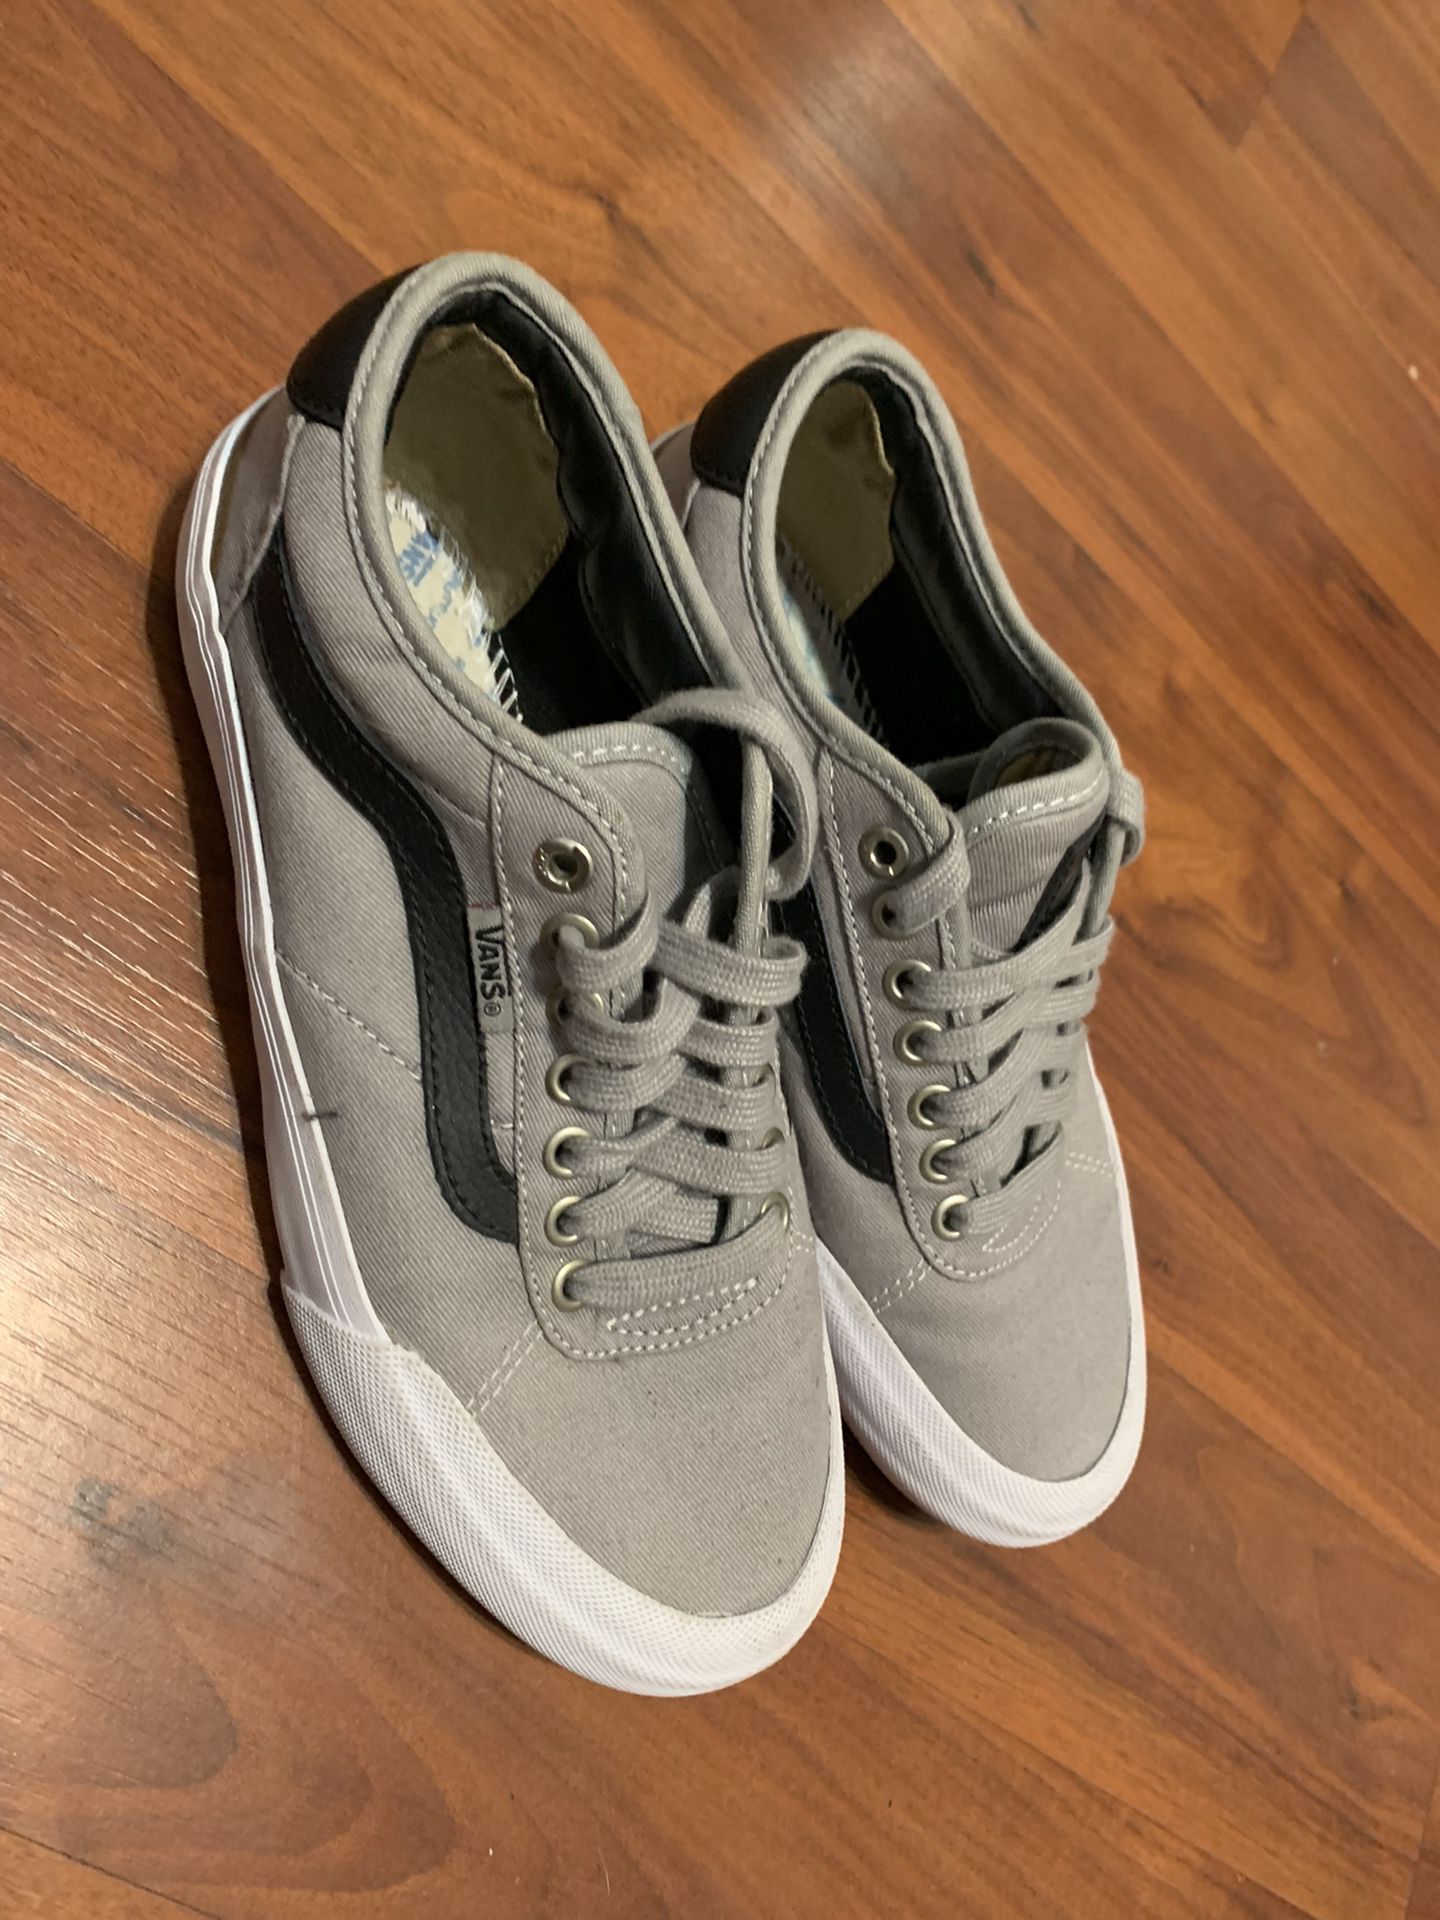 Vans China pro 2 drizzle gray canvas sneaker shoes size 5.5 men